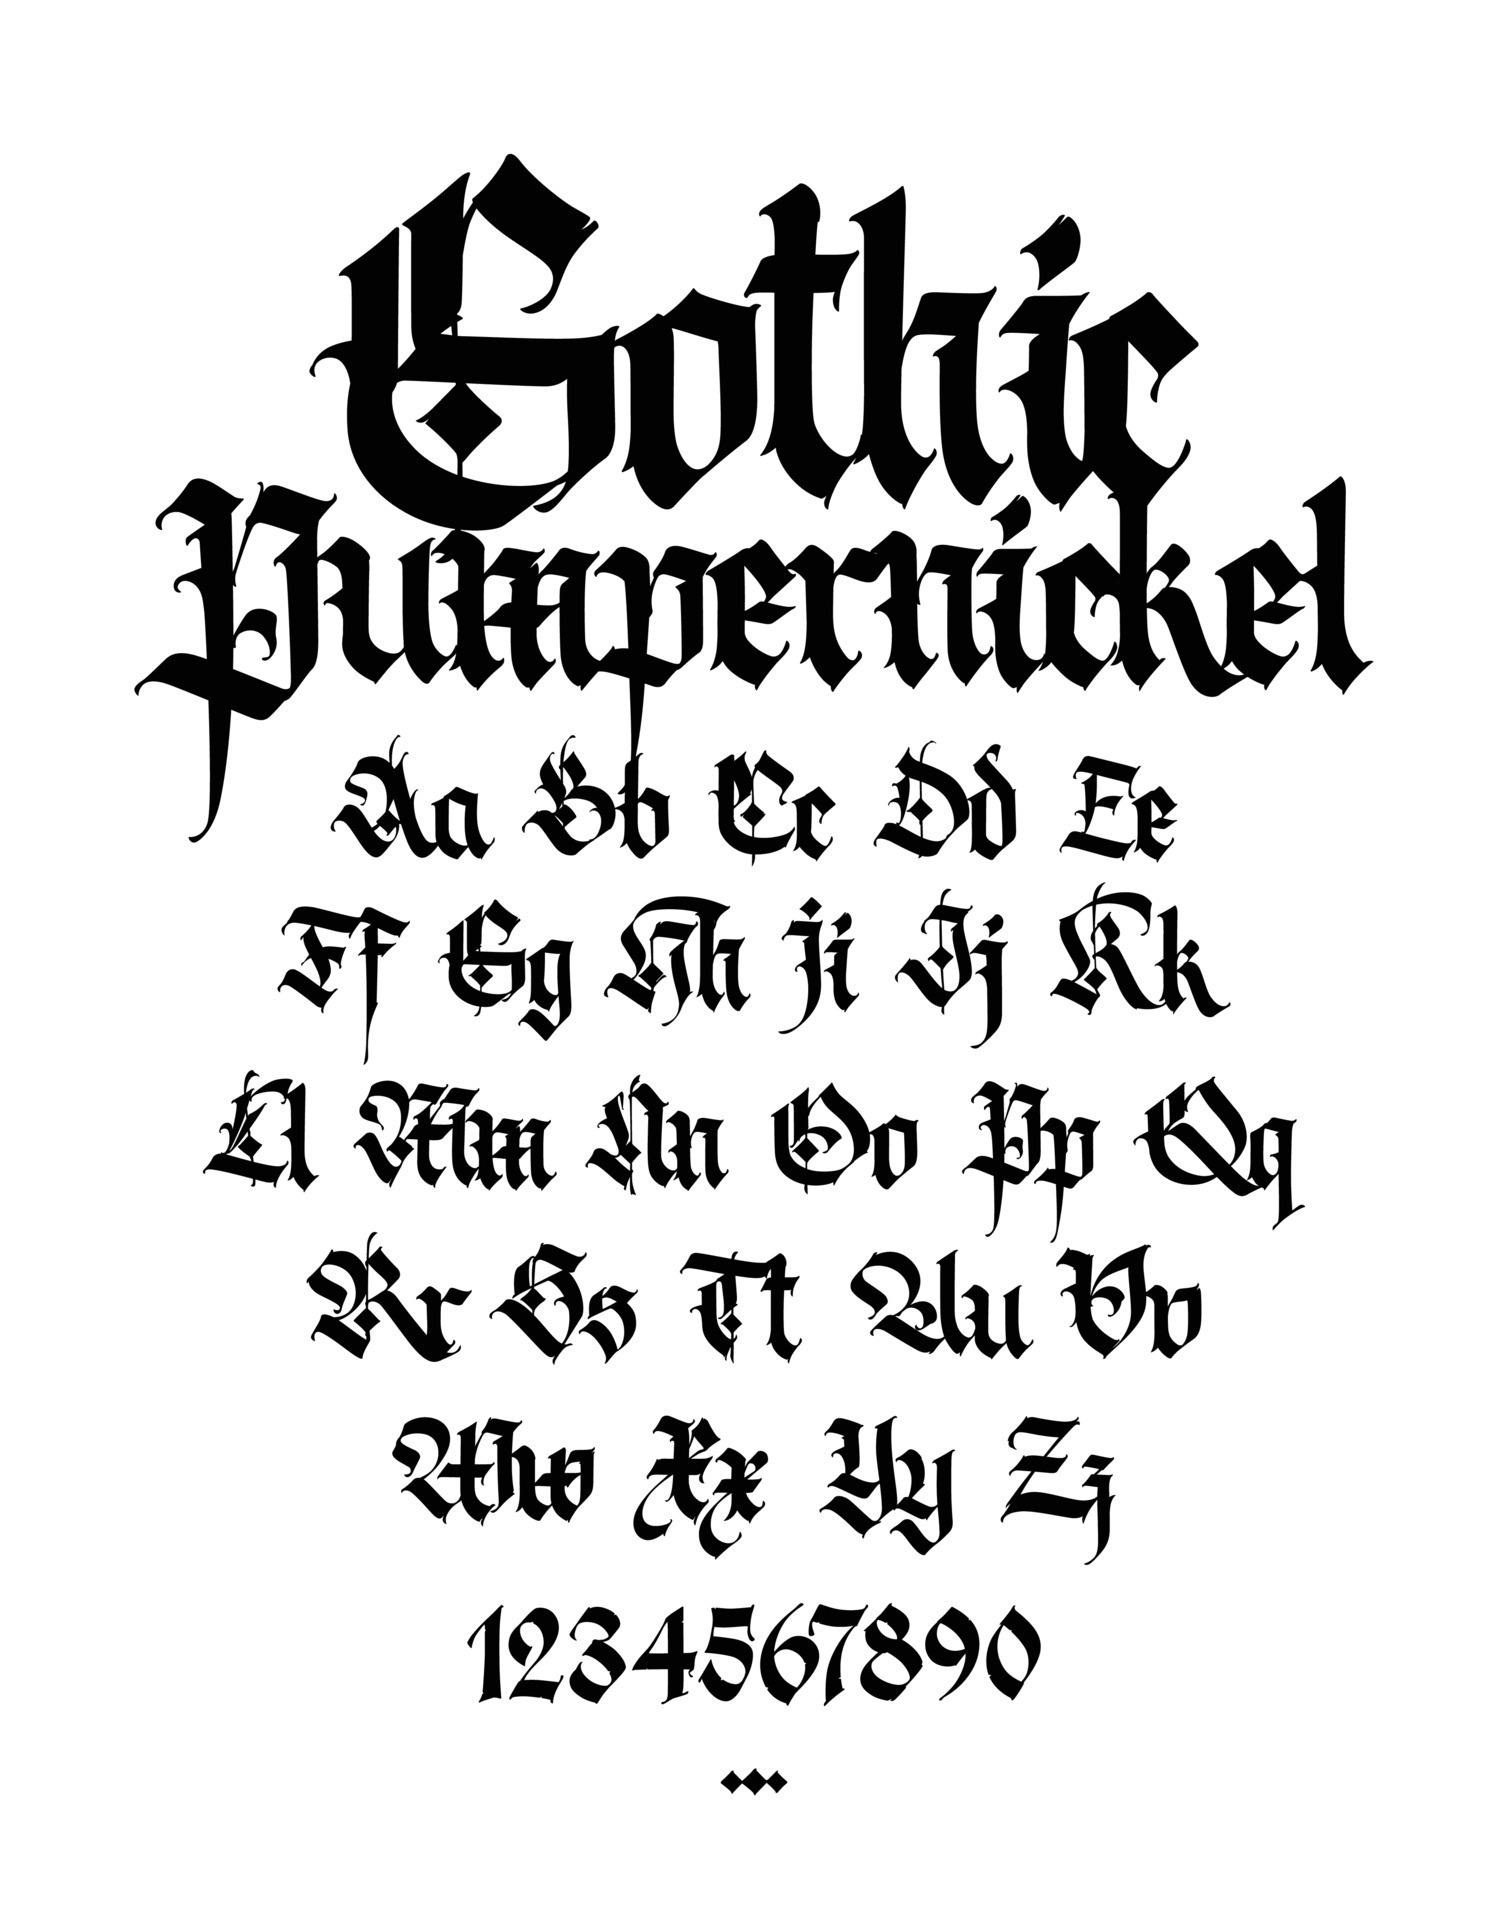 Phông chữ Gothic: Khám phá vẻ đẹp ma mị của phông chữ Gothic trong bức ảnh đầy bí ẩn.